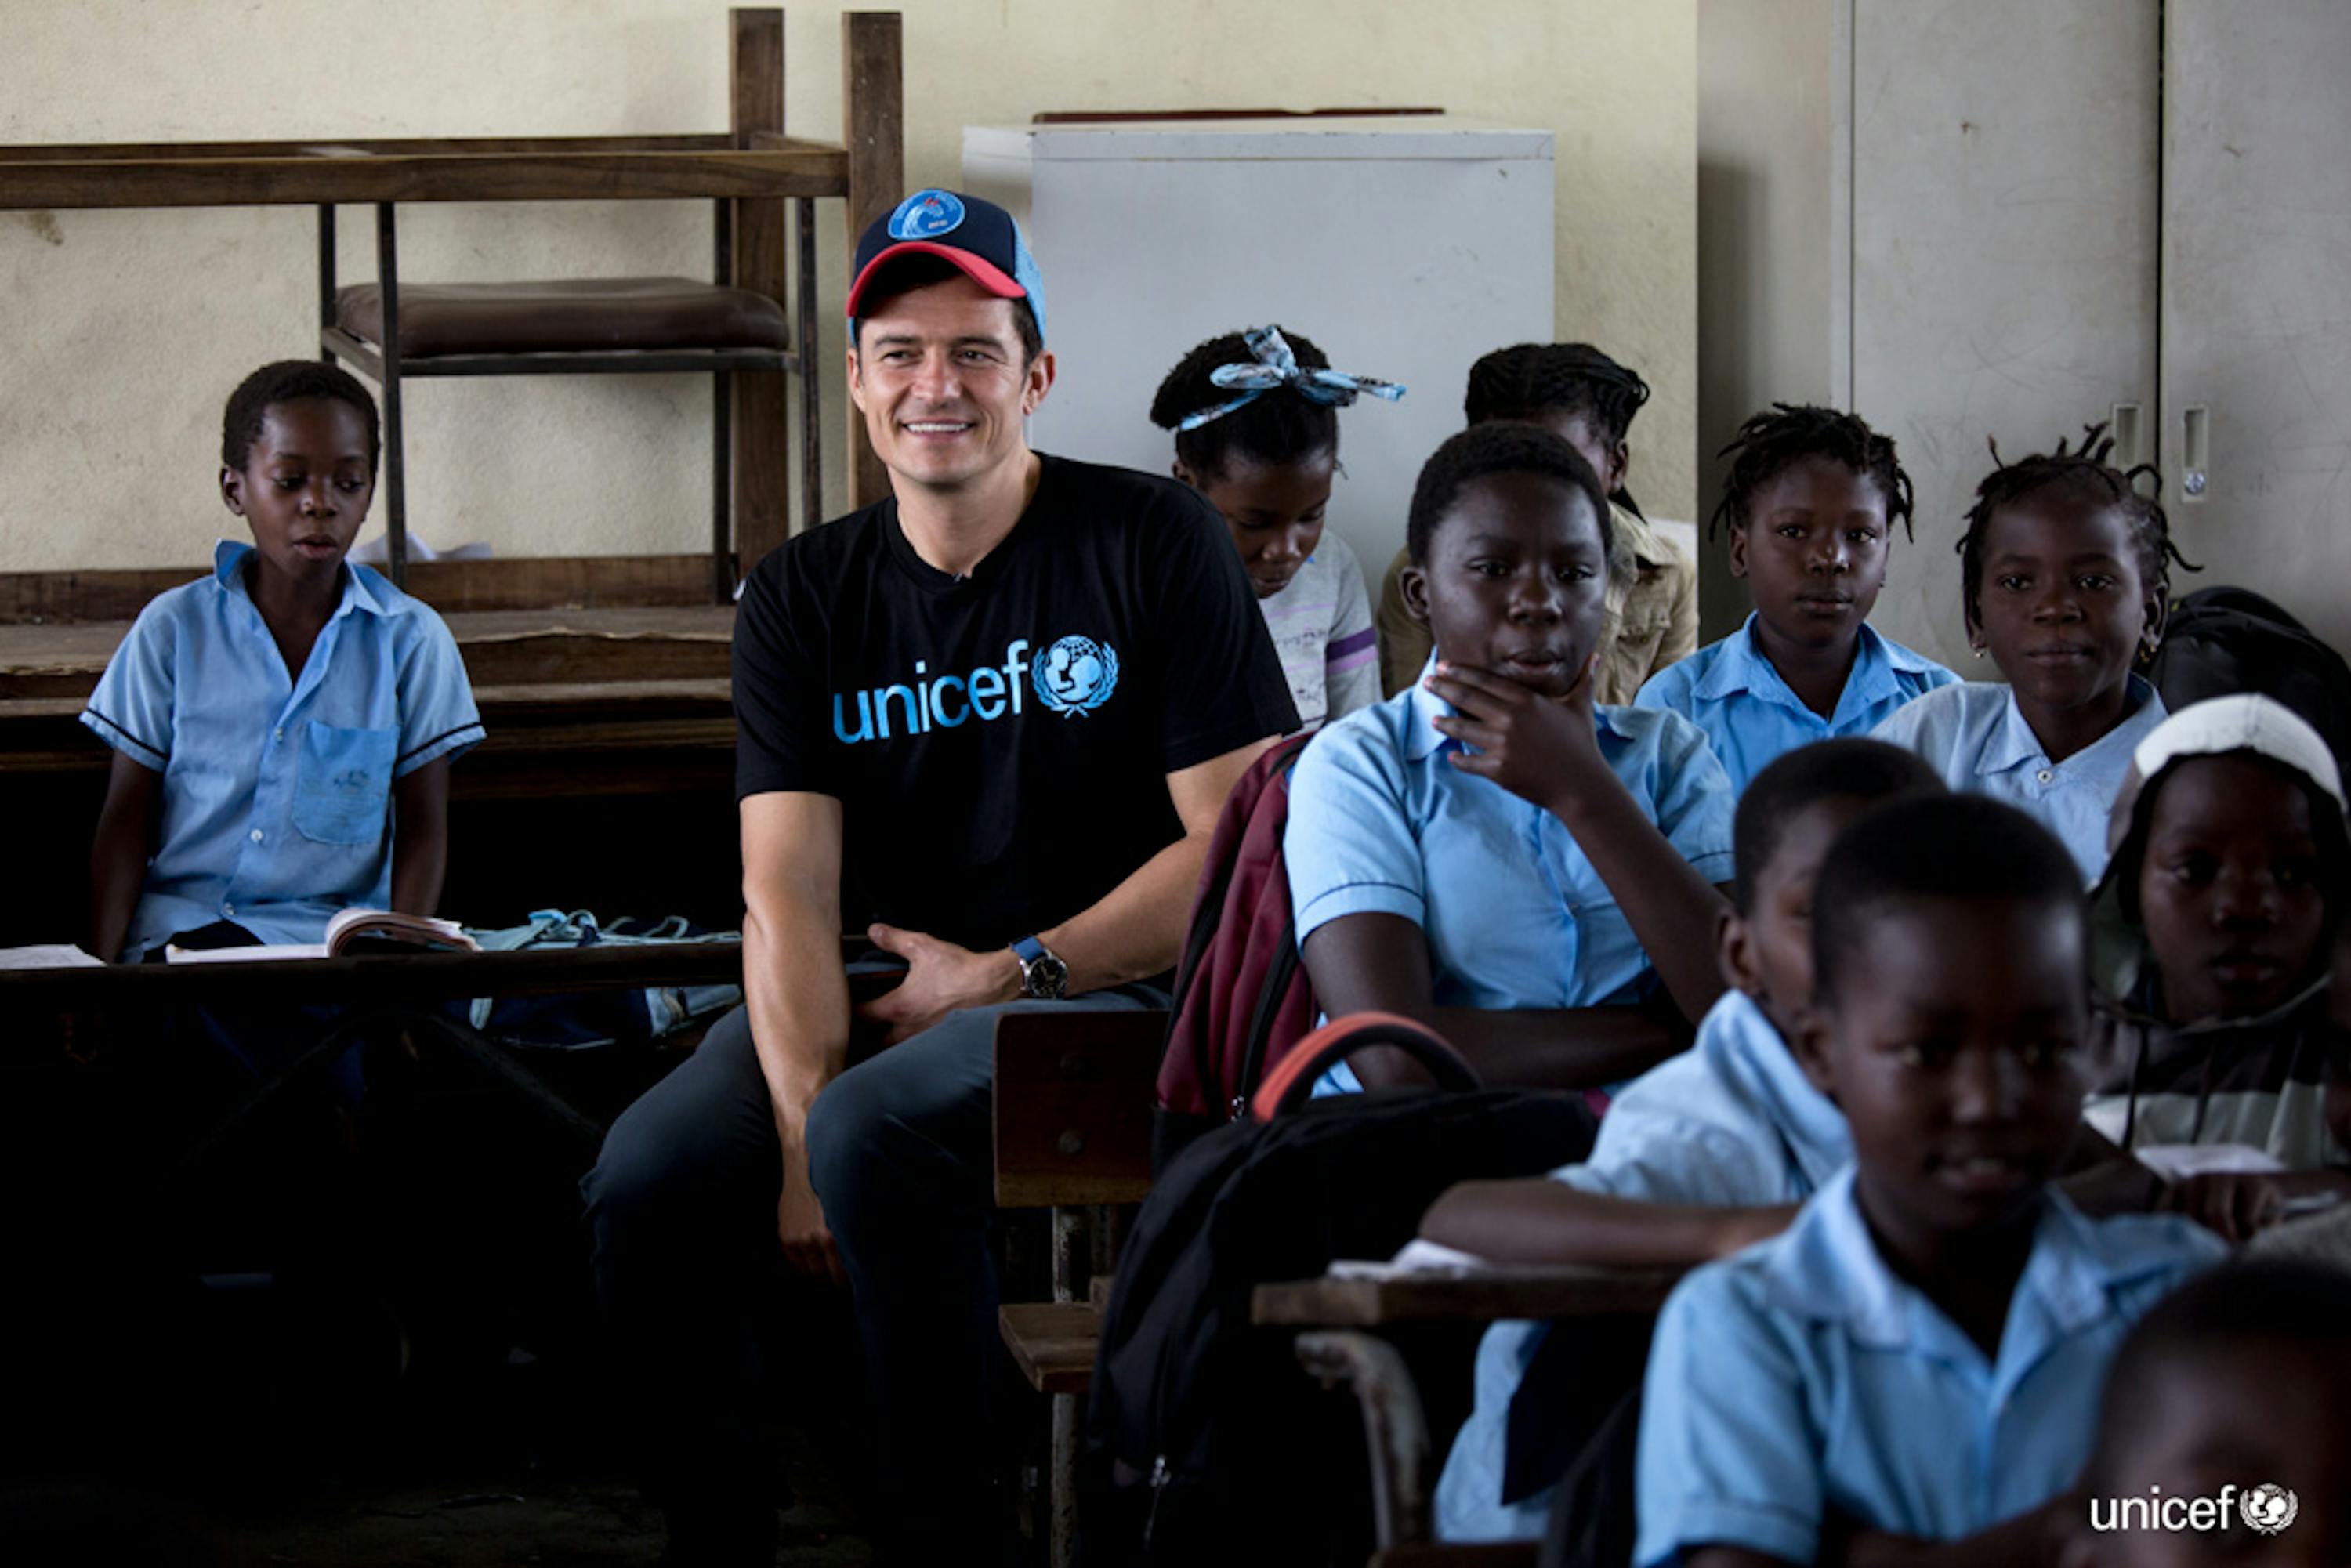 L'Ambasciatore di buona volontà Orlando Bloom incontra gli studenti alla scuola primaria del 12 ottobre. La scuola fu parzialmente distrutta da Cyclone Idai - © UNICEF/UN0316803/Prinsloo